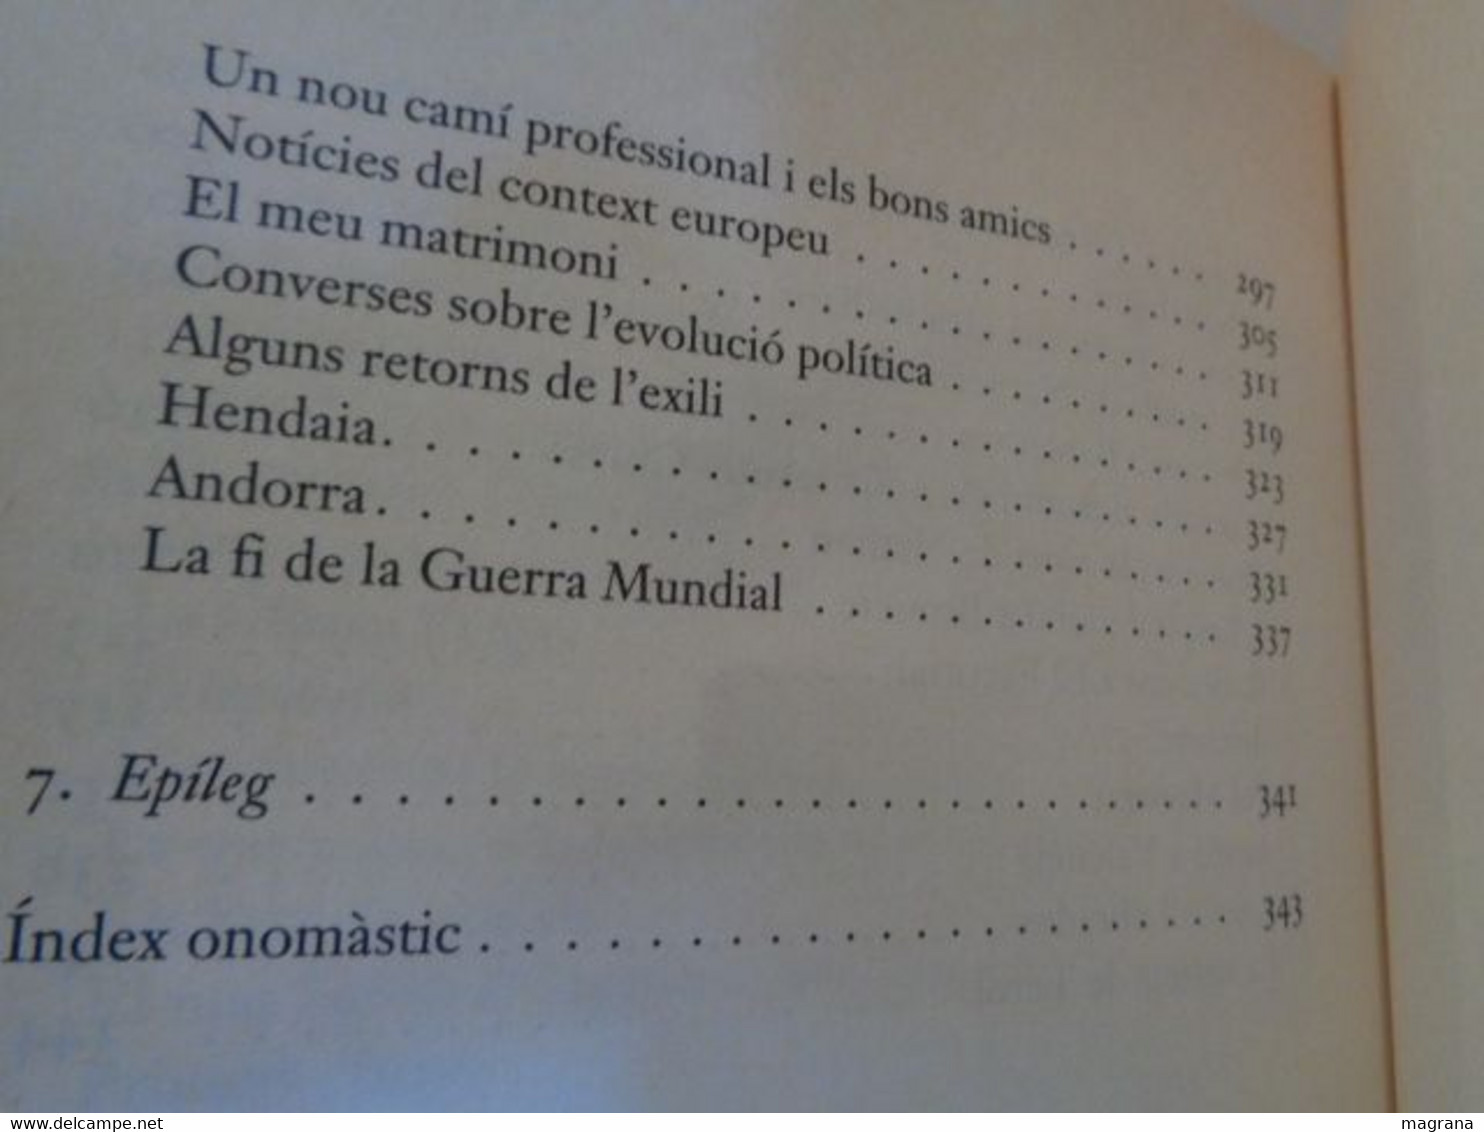 Memòries d'un cirugià. Moisès Broggi. Edicions 62. 2001. 356 pàgines. Idioma: Català.